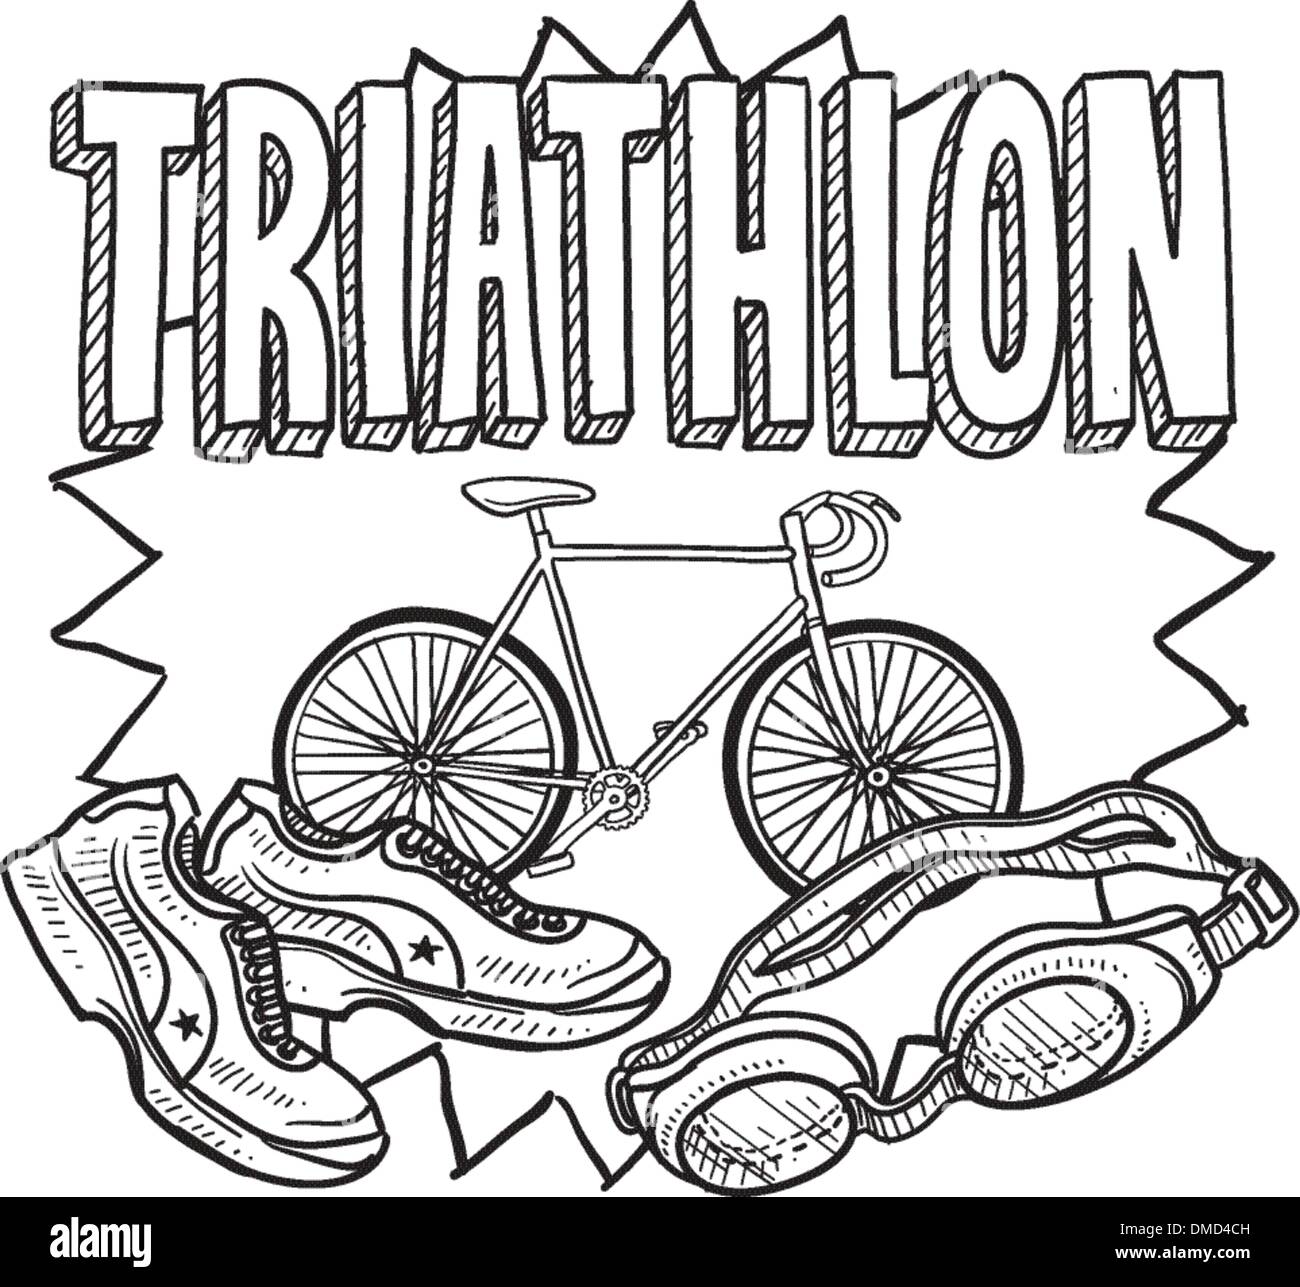 Croquis de triathlon Illustration de Vecteur